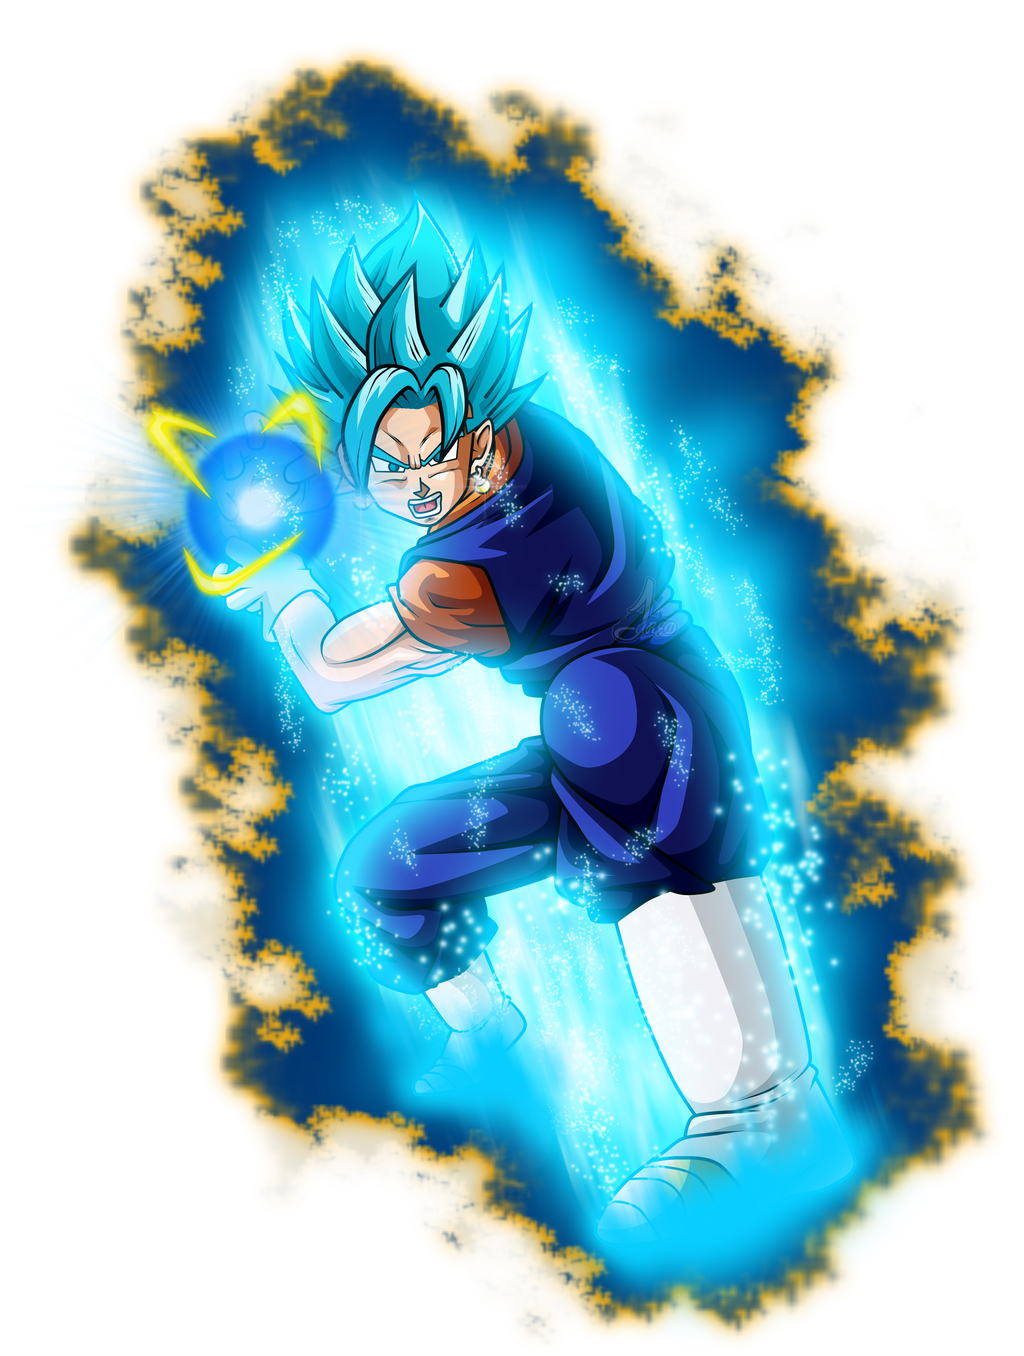 Goku ssj blue dbs by jaredsongohan on DeviantArt